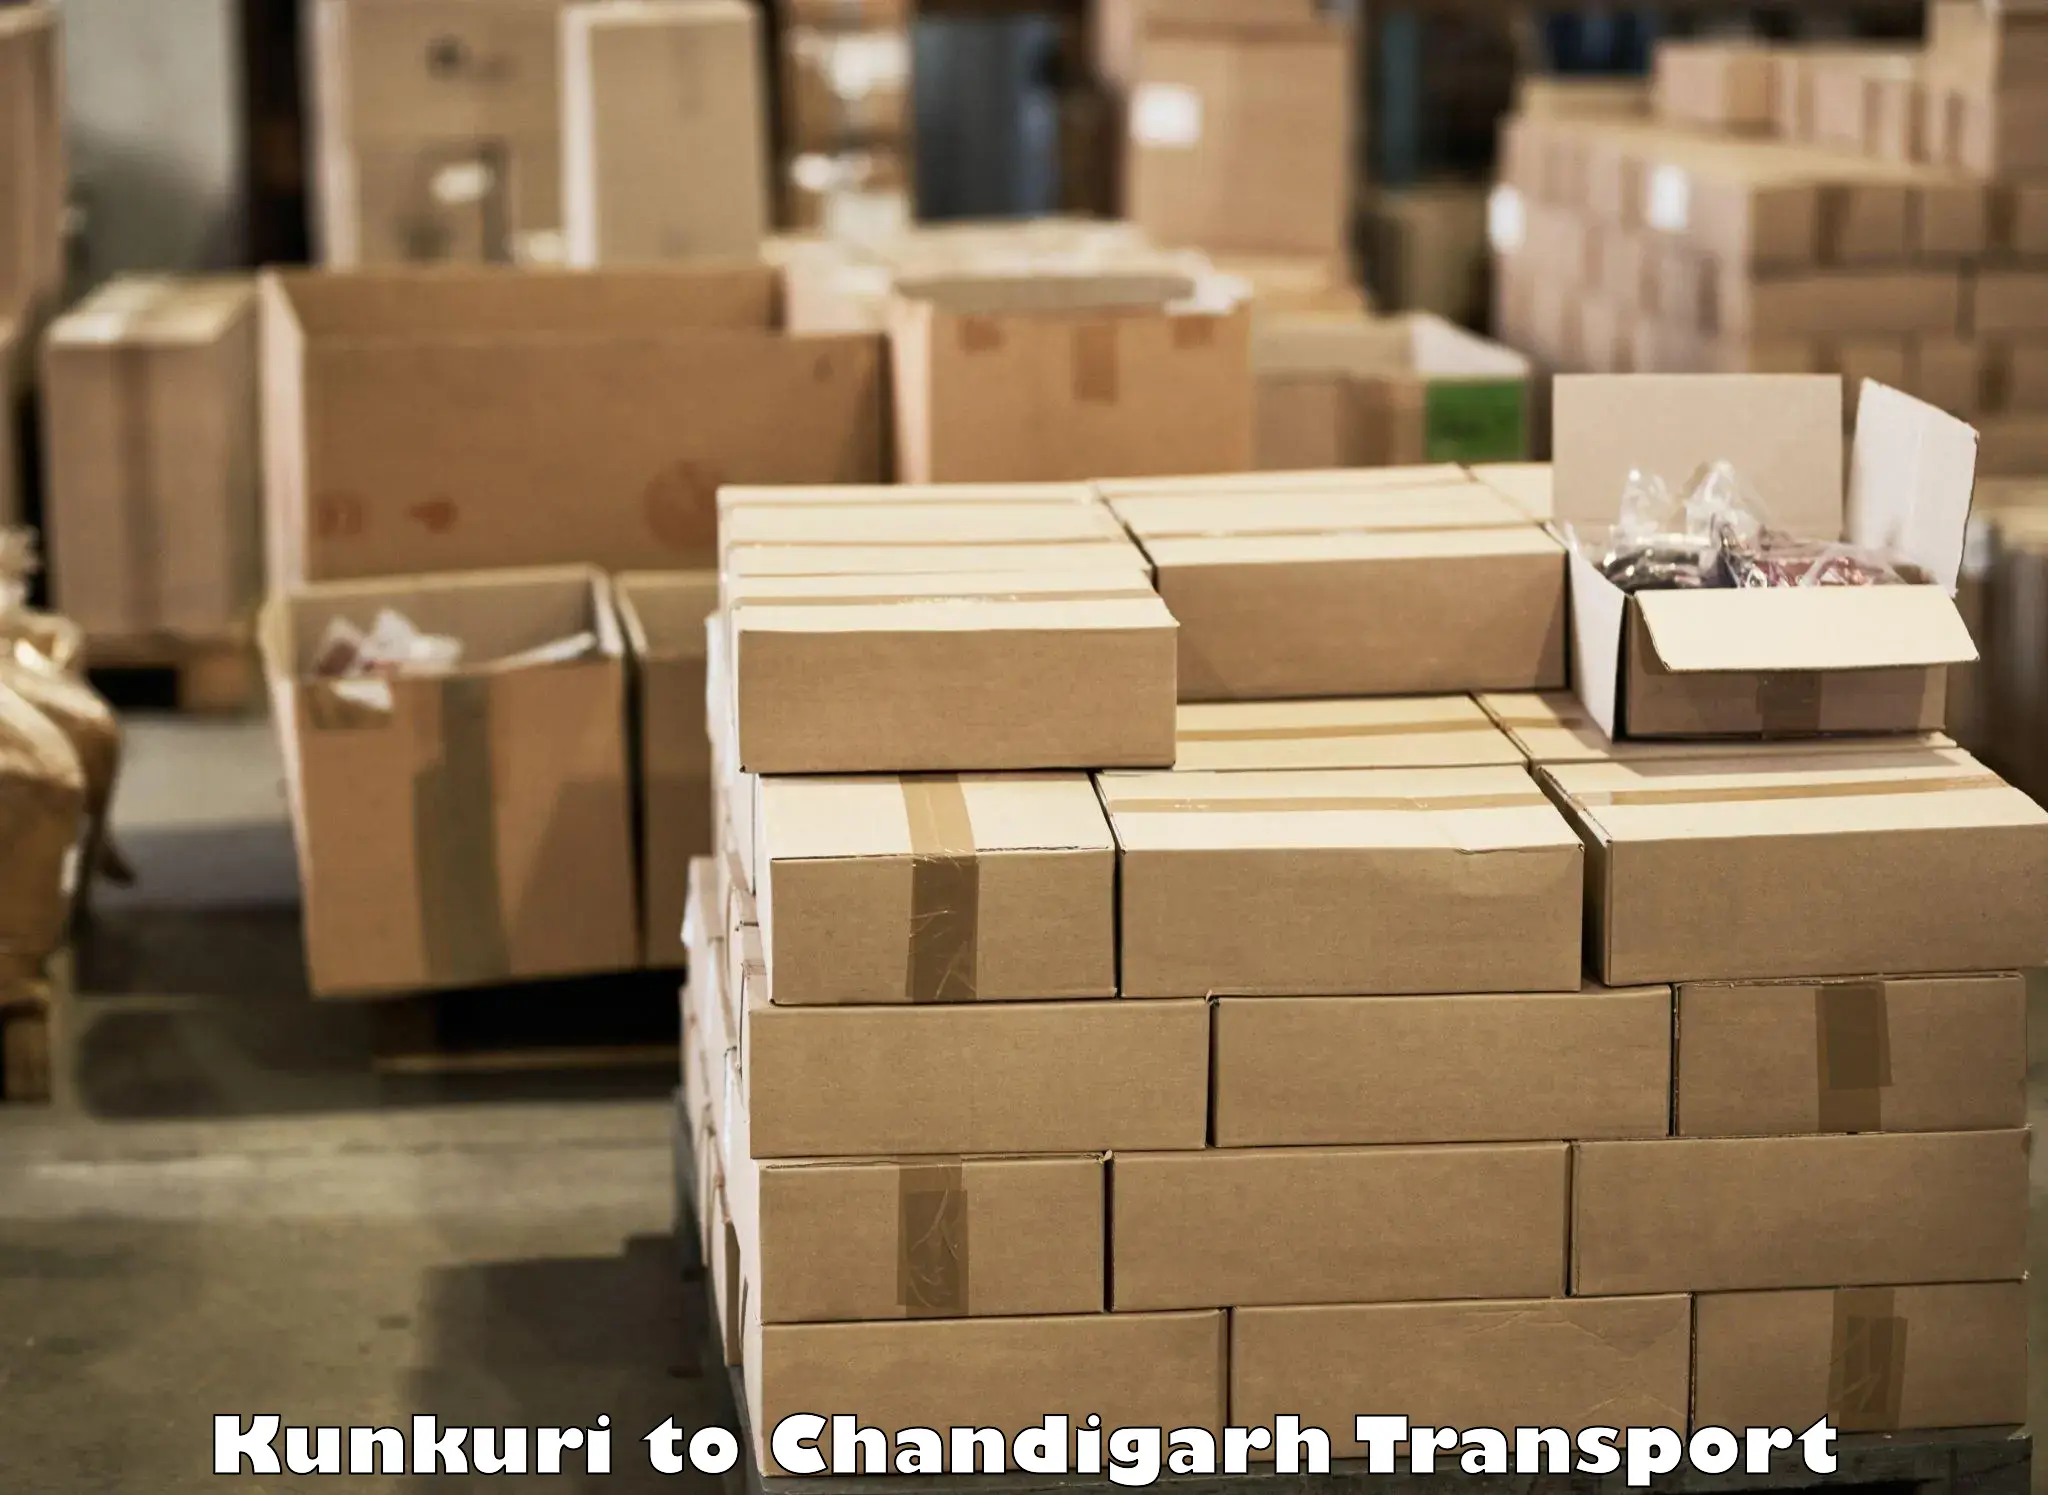 Transport in sharing Kunkuri to Chandigarh